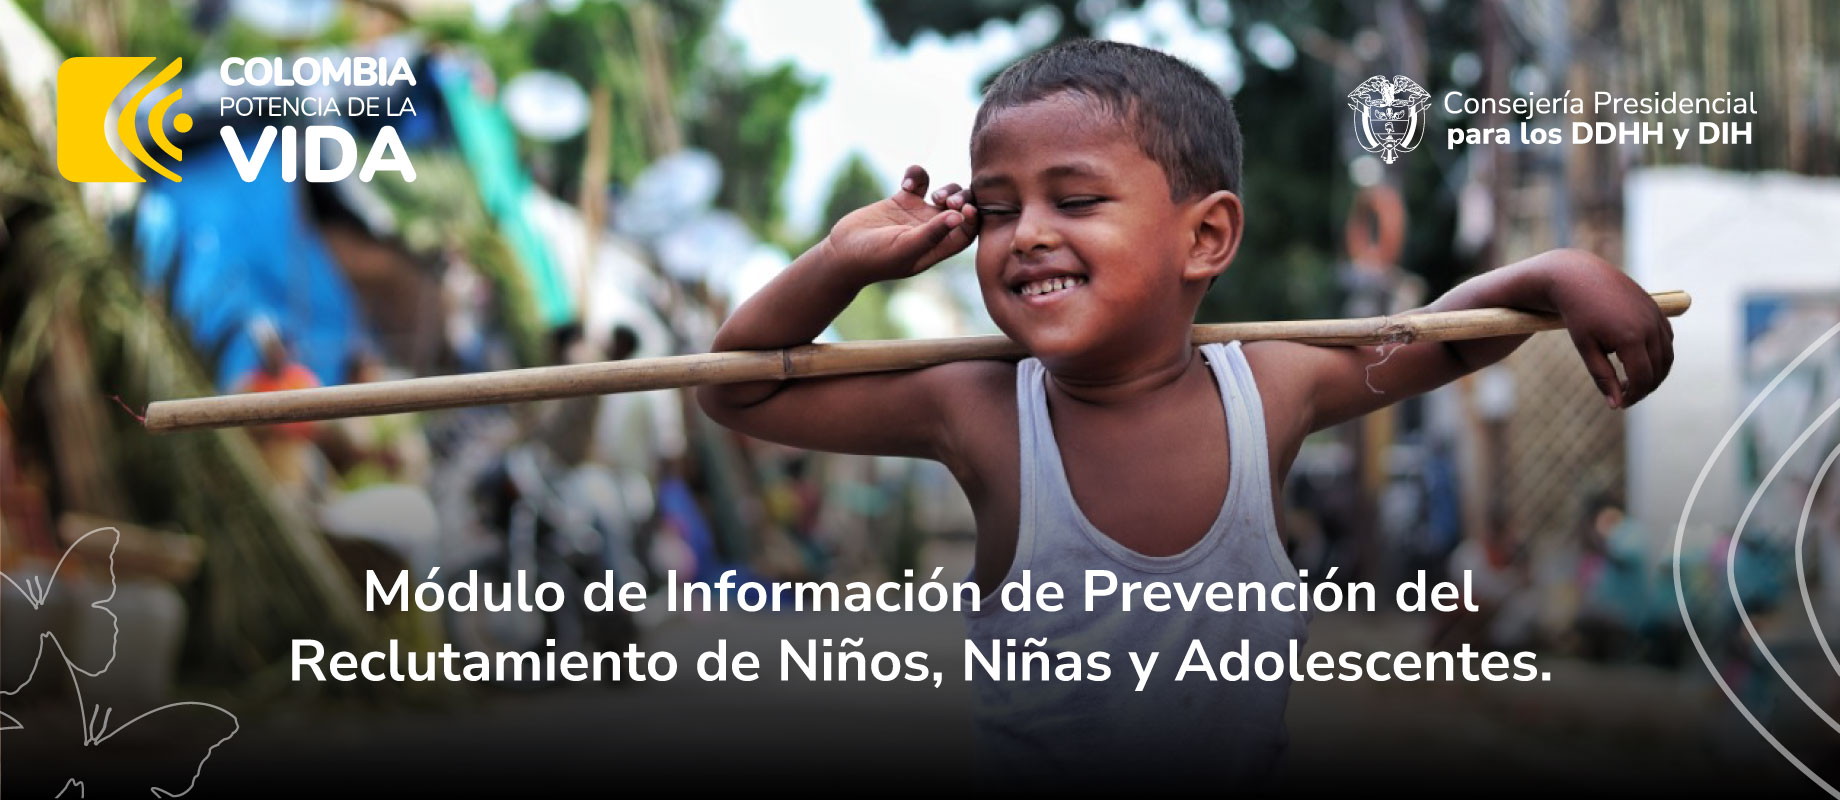 Módulo de Información de Prevención del Reclutamiento de Niños, Niñas y Adolescentes